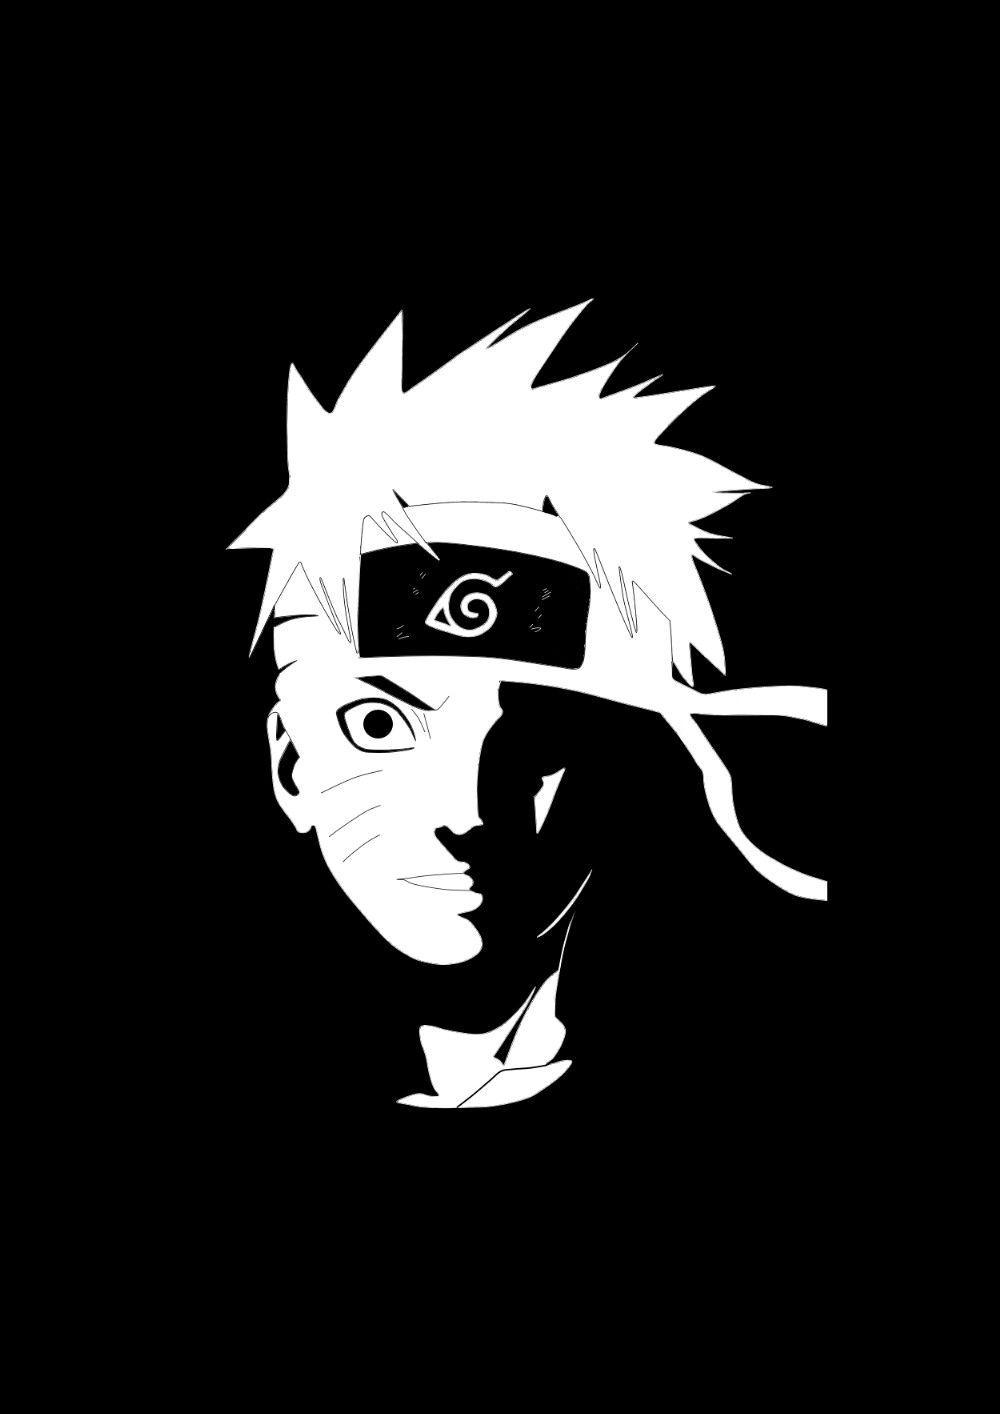 Naruto Shippuden Black and White Wallpapers - Top Những Hình Ảnh Đẹp